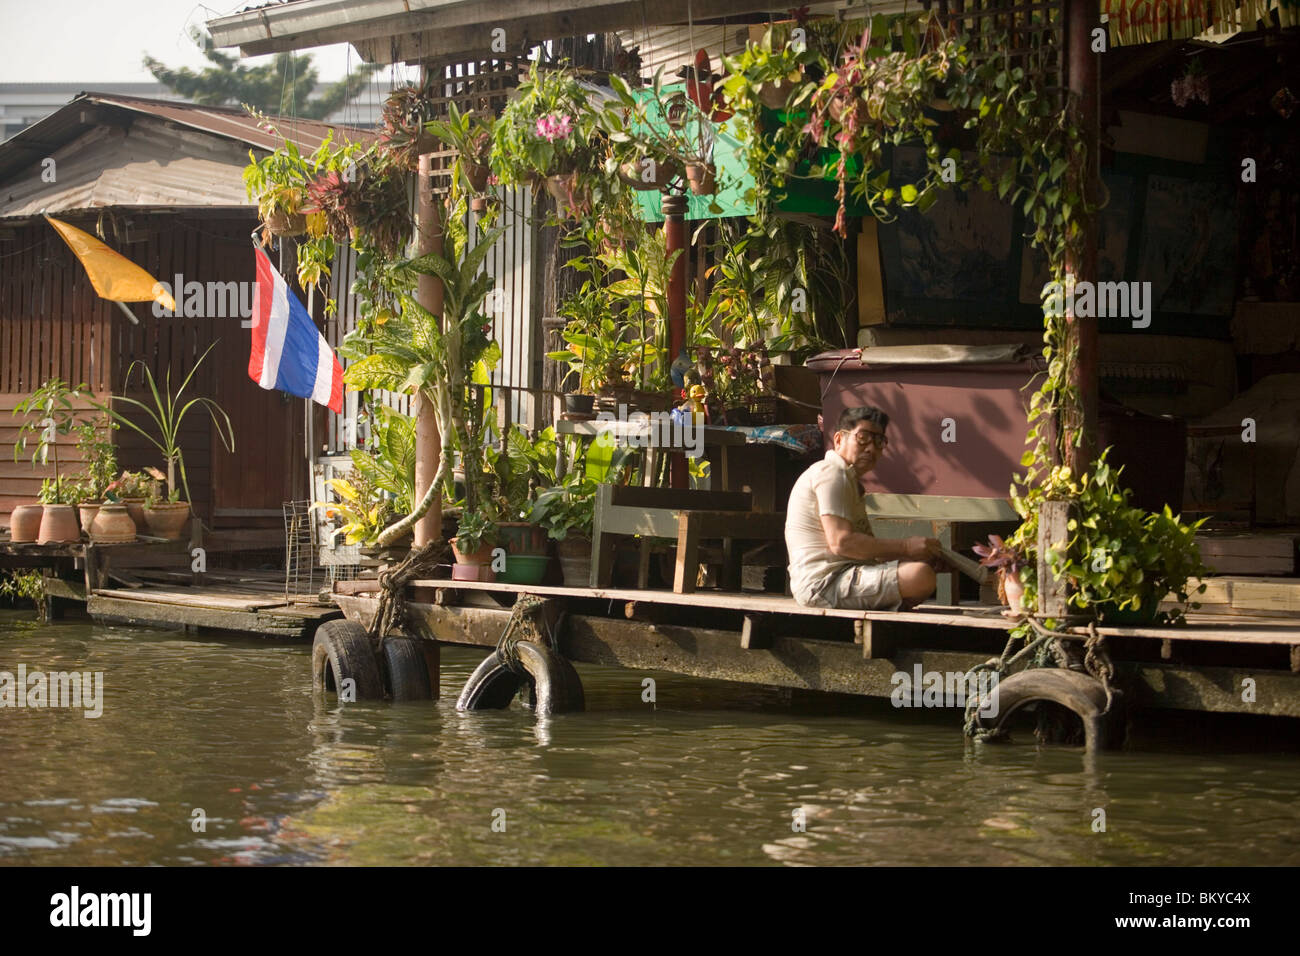 Des maisons sur pilotis en bois le long d'un Khlong, Thon buri, Bangkok, Thaïlande Banque D'Images